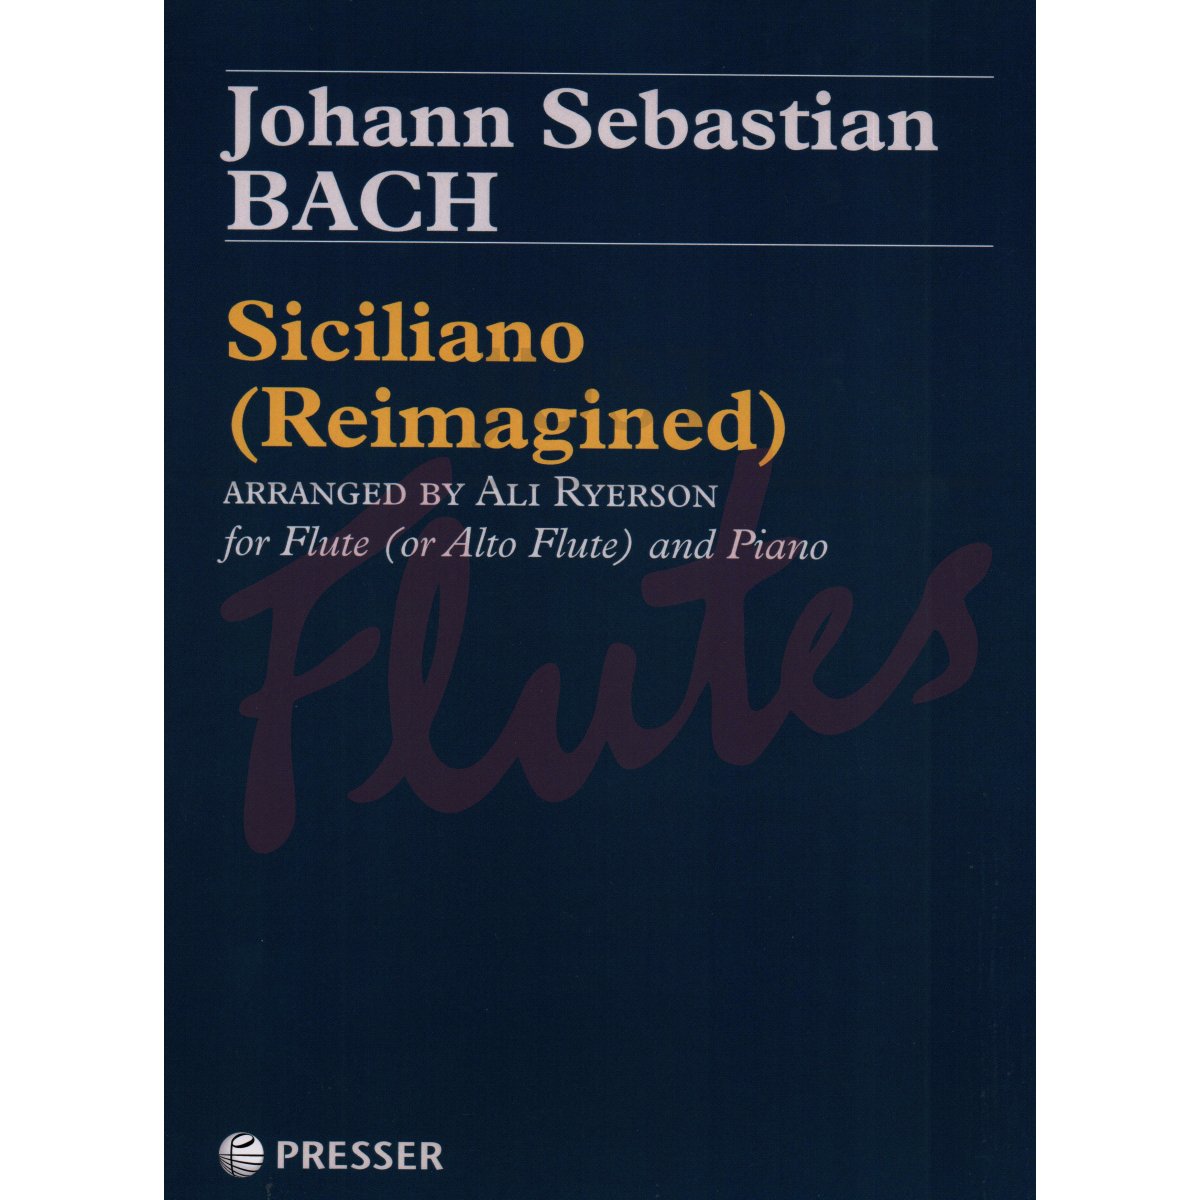 Siciliano (Reimagined) for Flute (or Alto Flute) and Piano